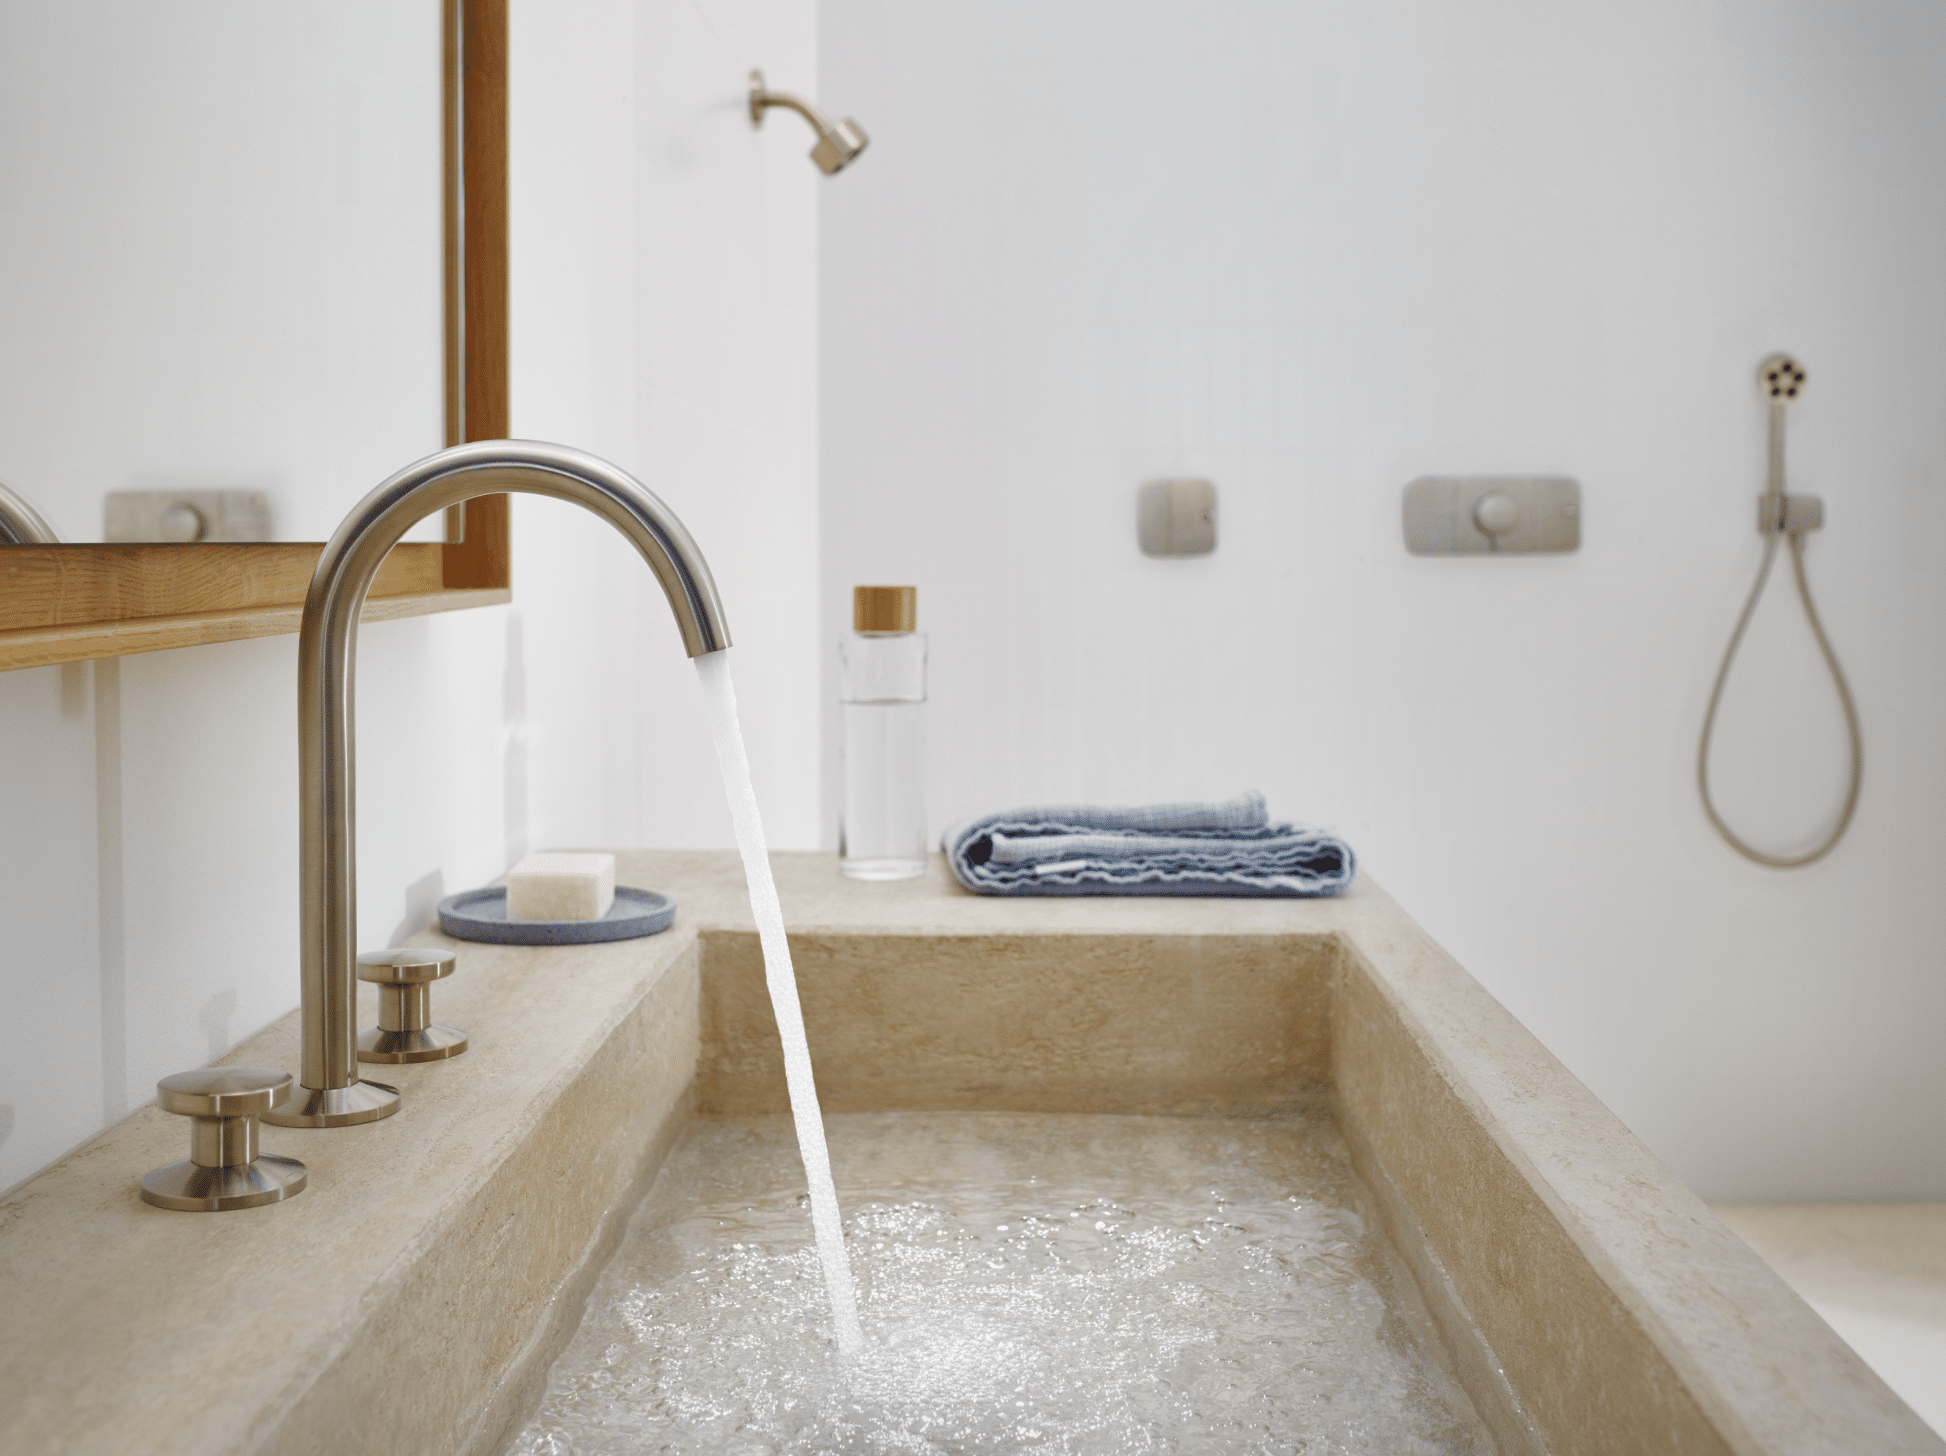 Hansgrohe zeigt ein Doppelwaschbecken in Kalksteinoptik mit goldenen Wasserhähnen, einem rechteckigen Spiegel und Walk-In Dusche.